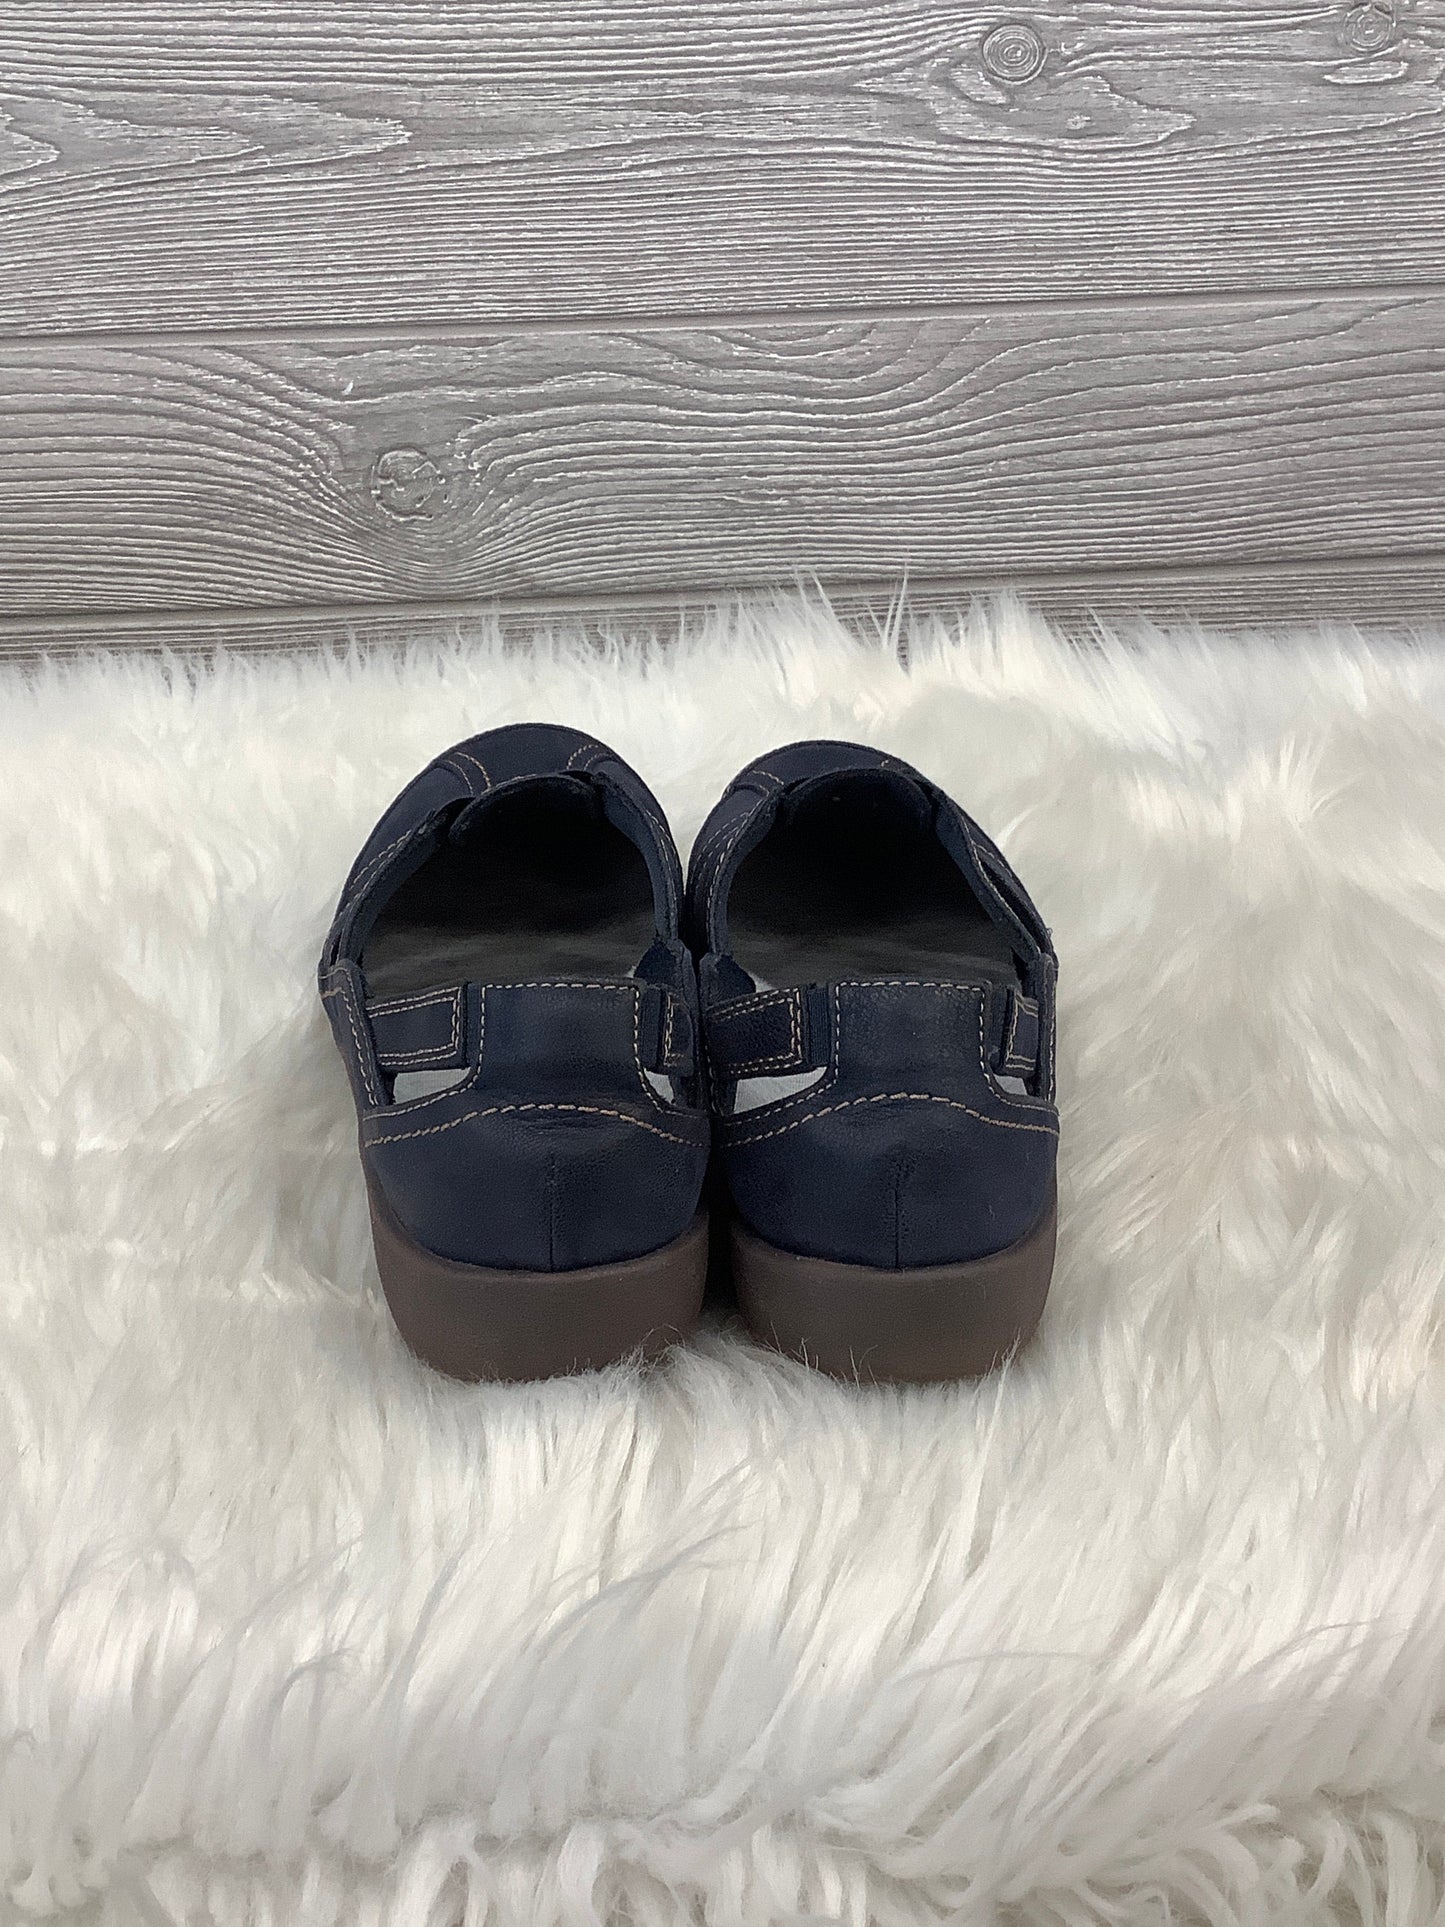 Blue Shoes Flats Clarks, Size 6.5